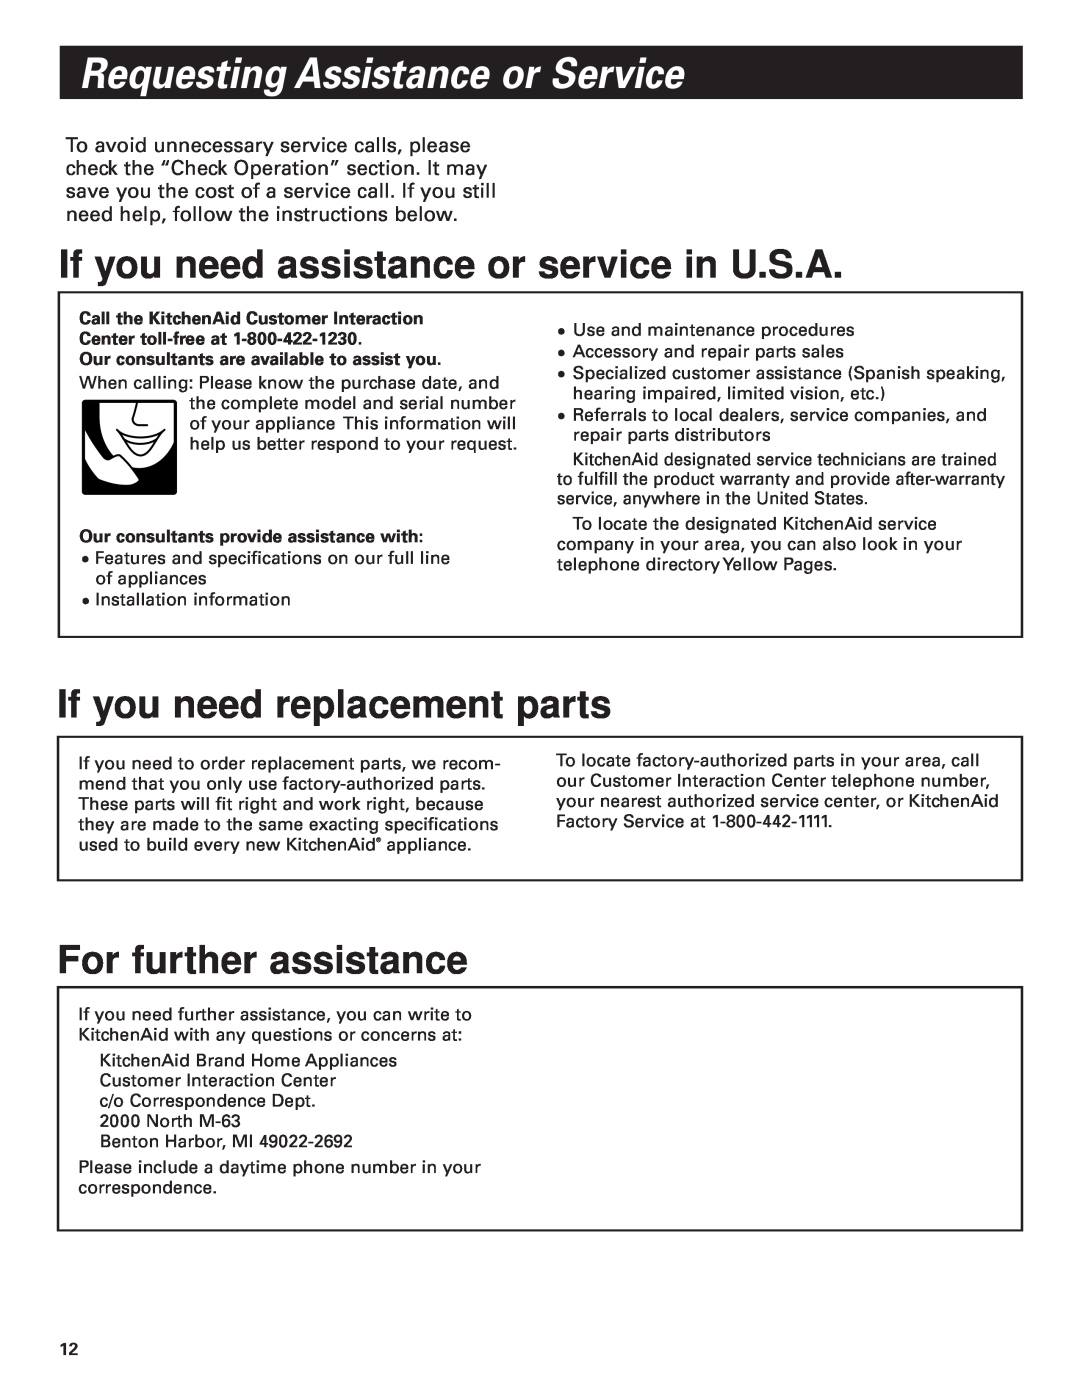 KitchenAid Pro Line Series Requesting Assistance or Service, If you need assistance or service in U.S.A 